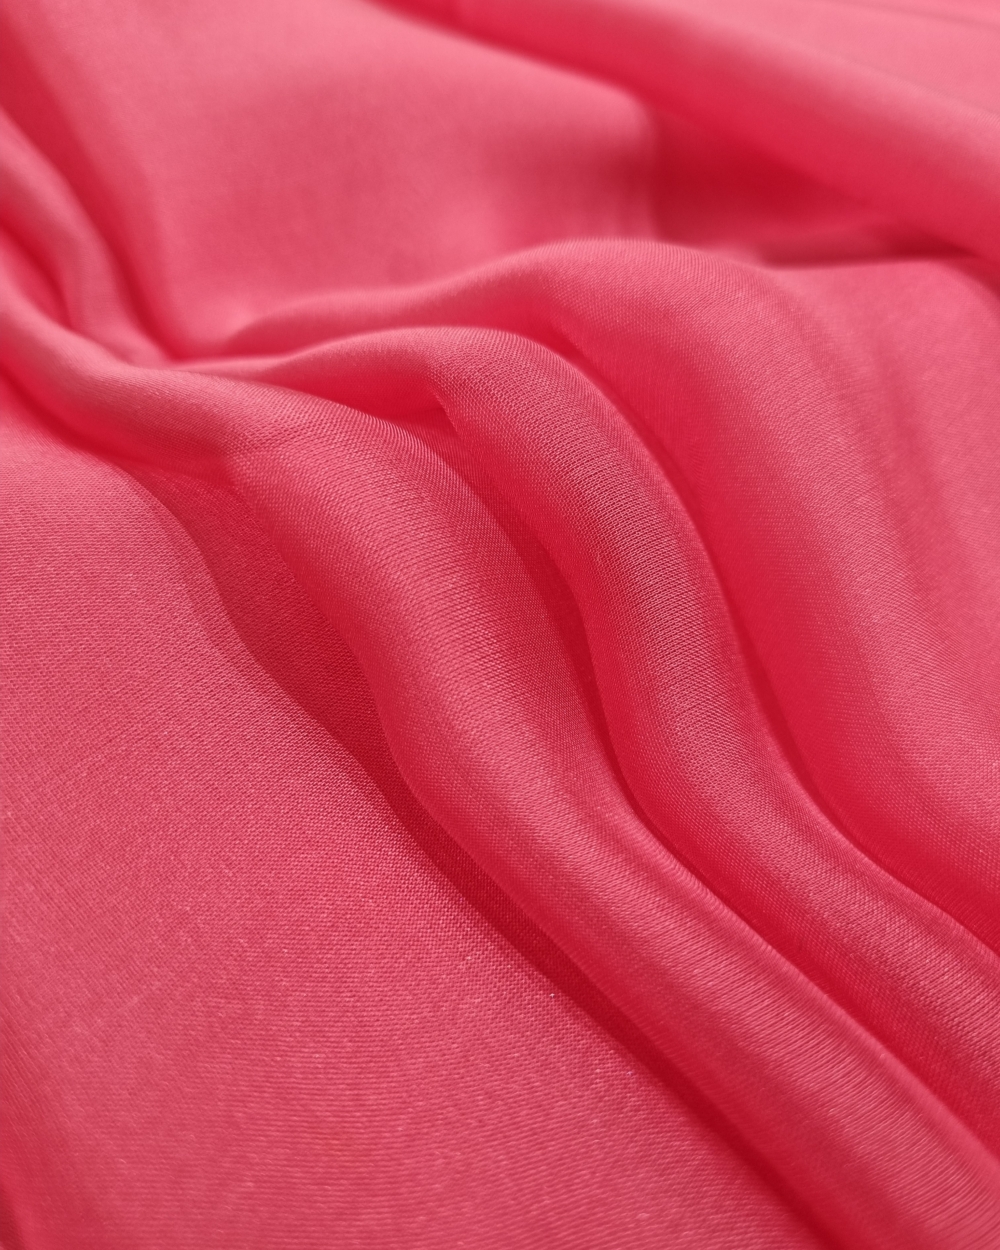 Rožinis šilko šifonas suknelei. Labai minkštas, lengvas, permatomas, plazdantis, plastiškas, gražiai krentantis, peregentis.